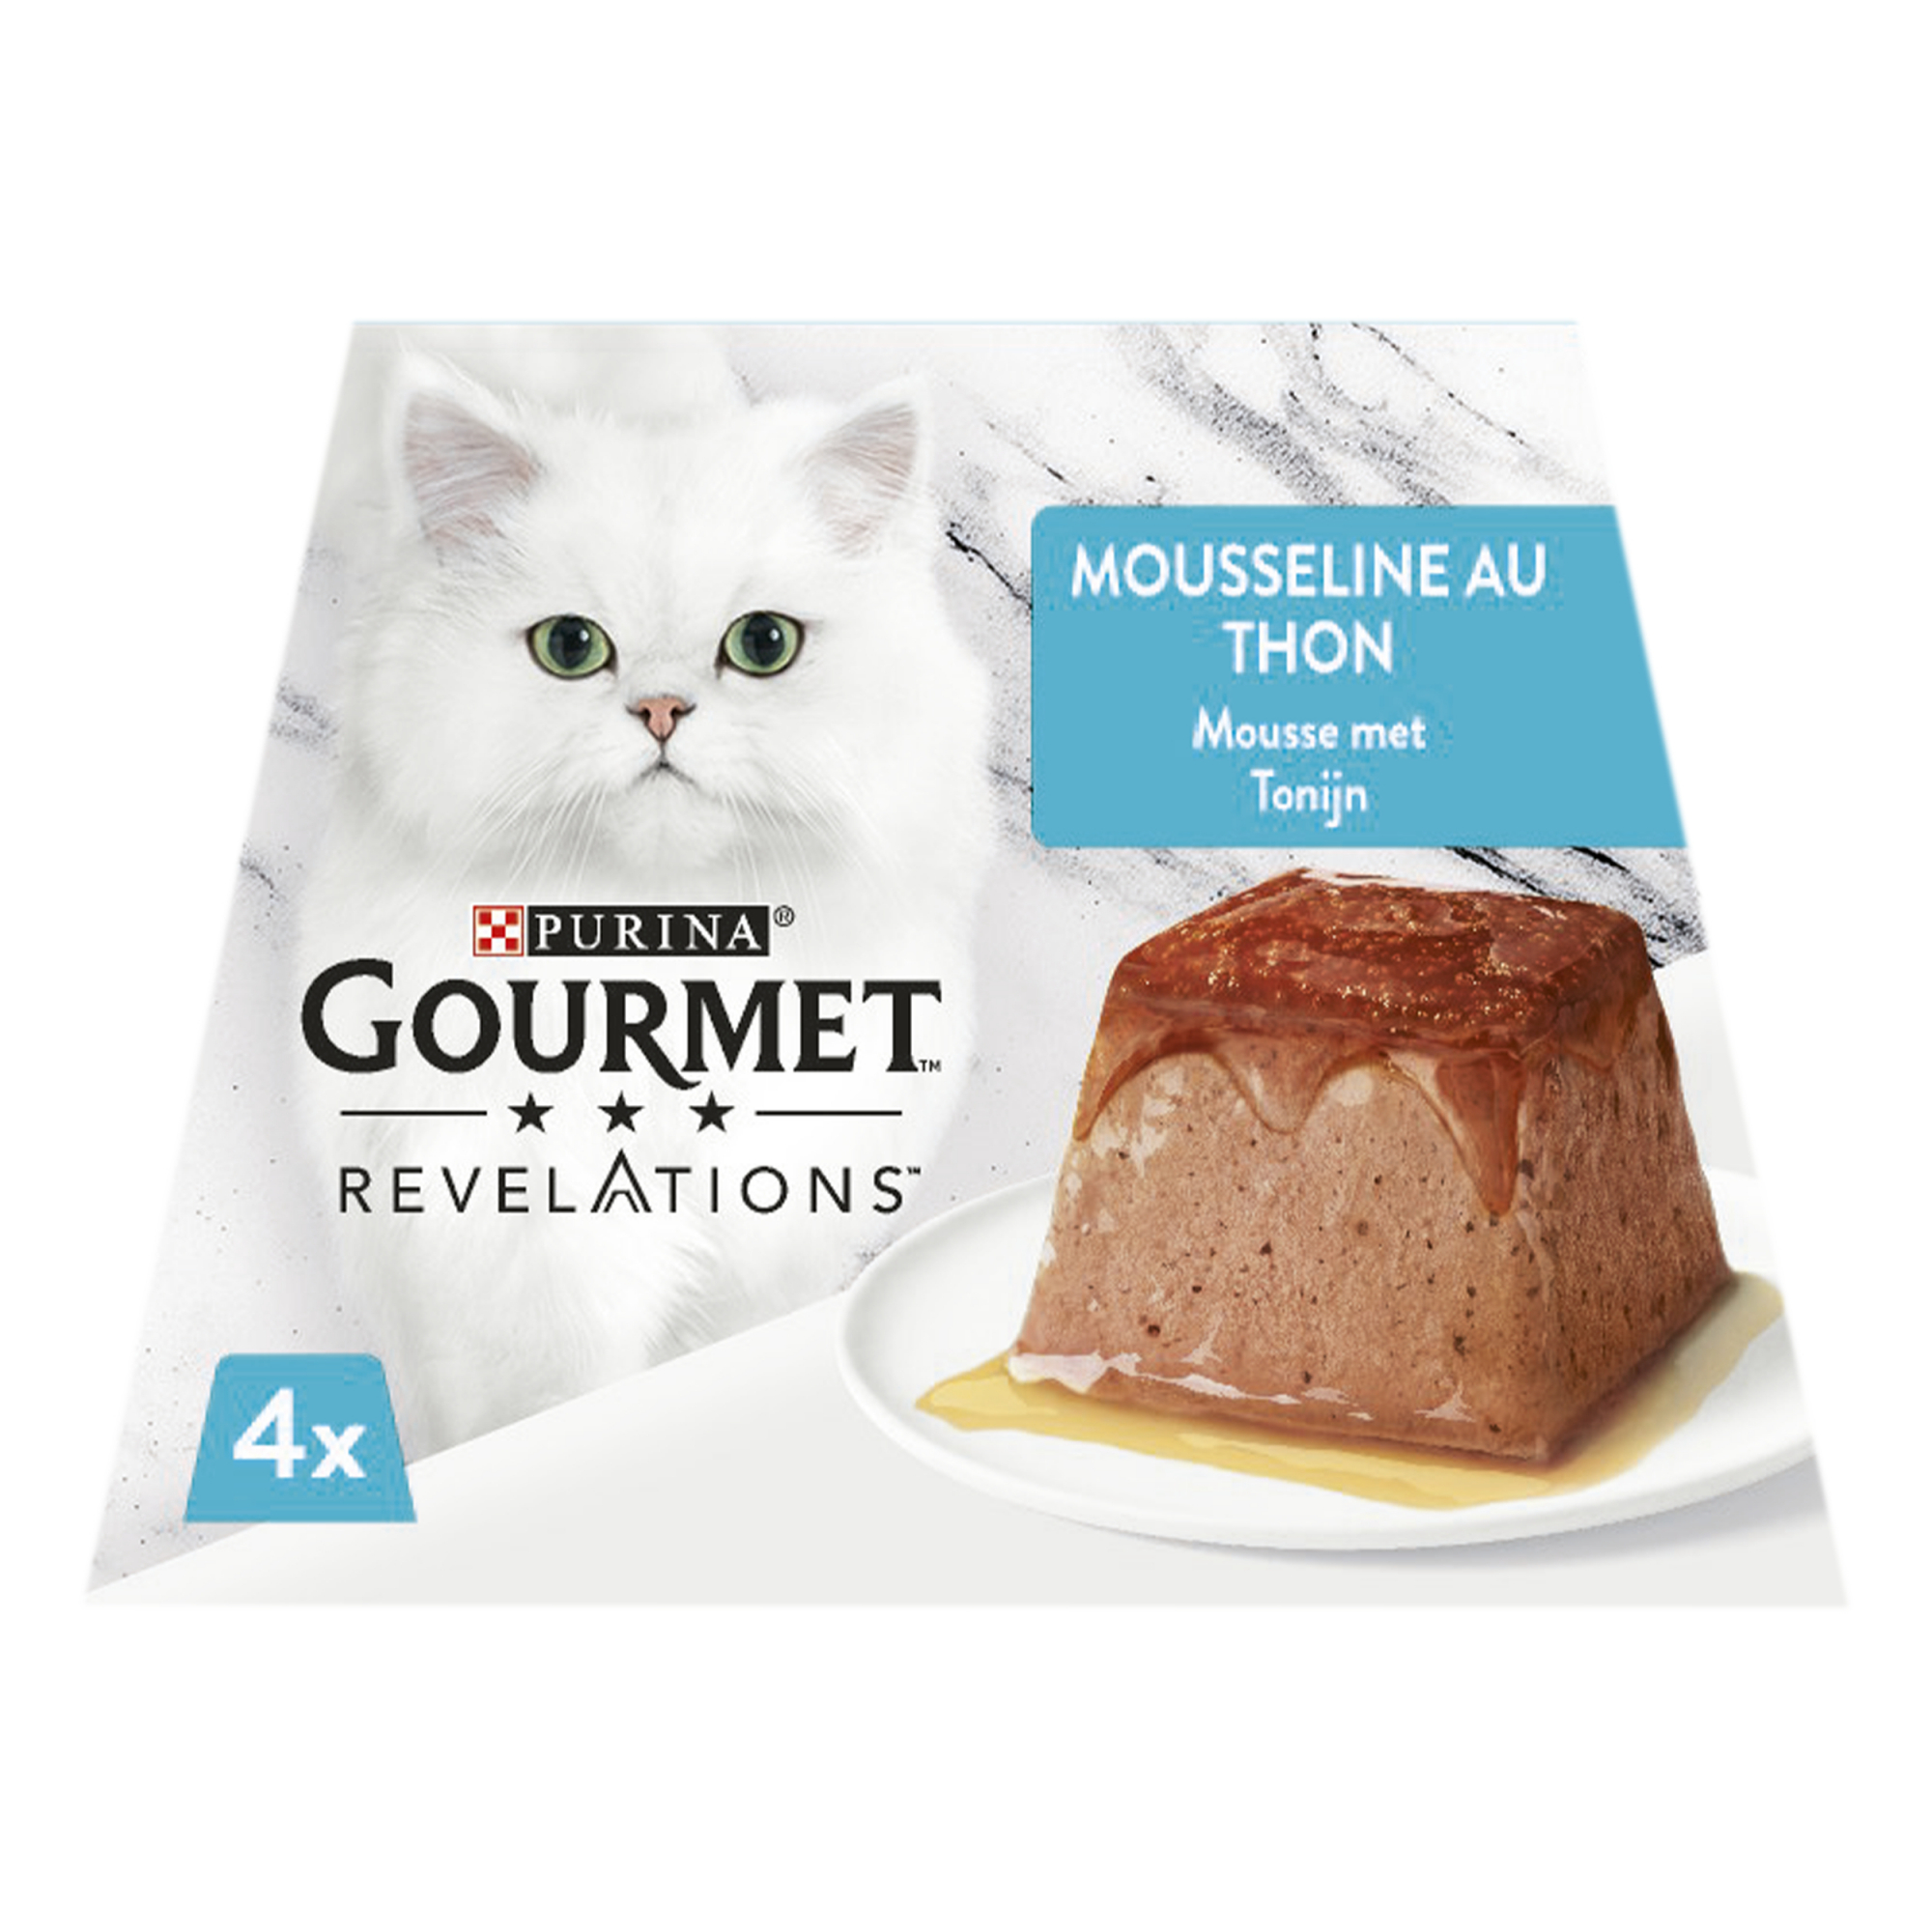 GOURMET Revelations, Mousse met tonijn